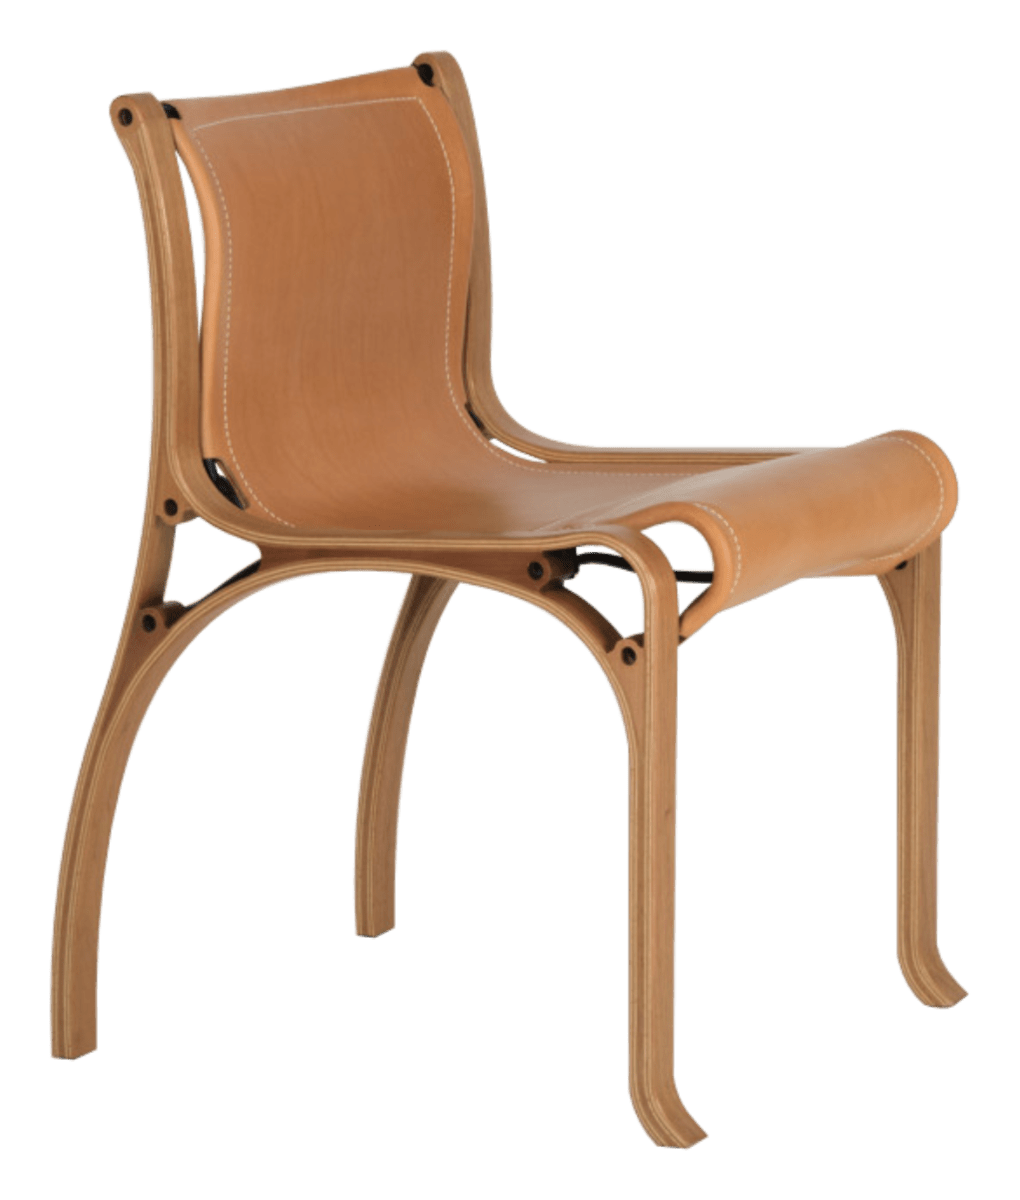 cadeira cv model A objekto caramelo 1200px pe01 1 deezign